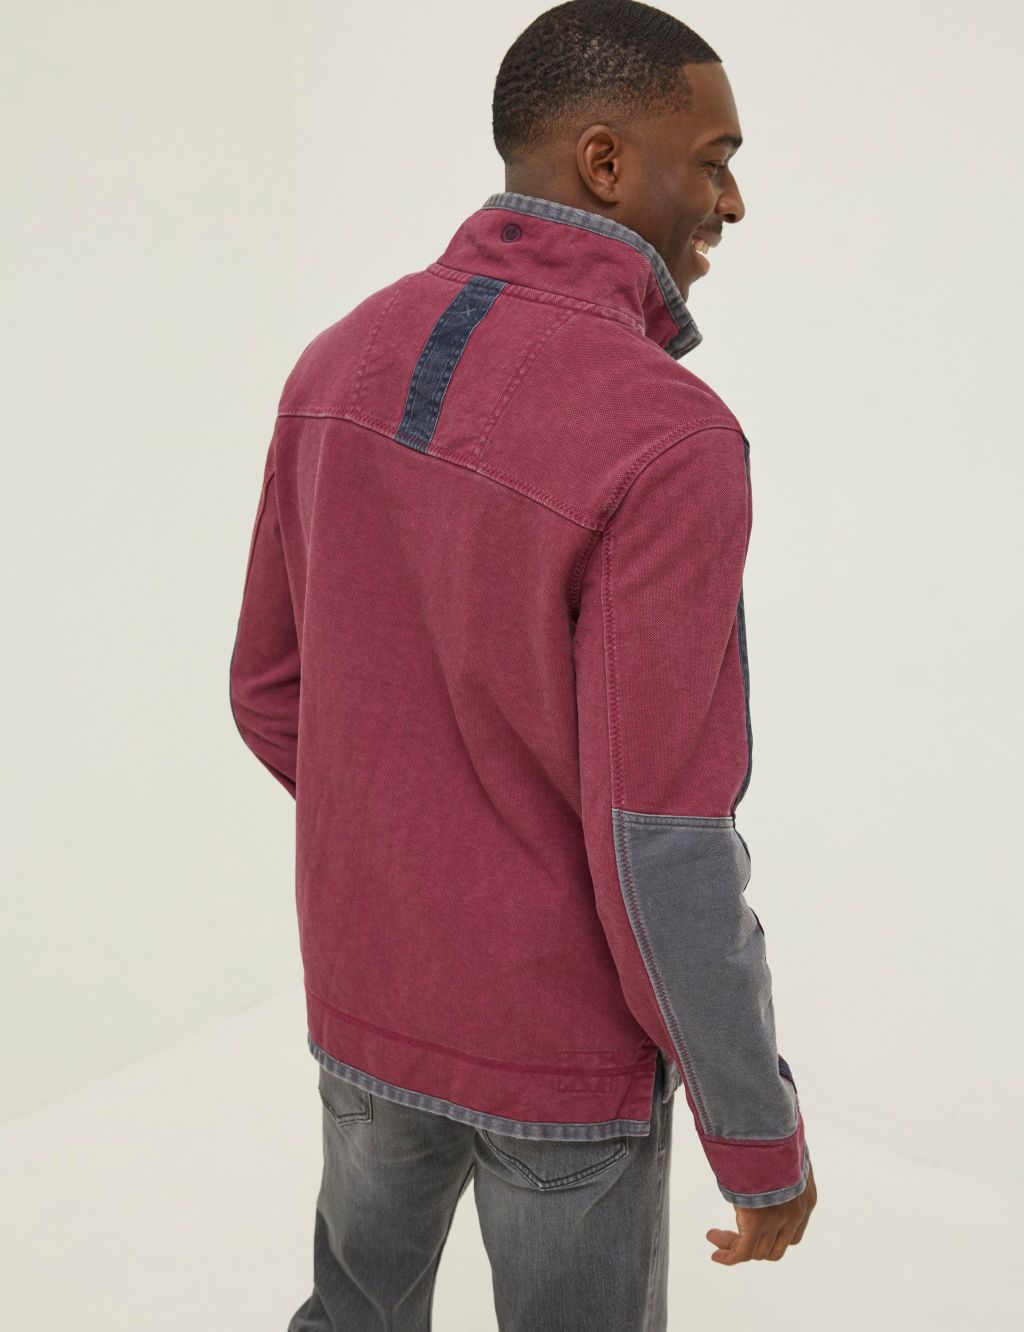 Cotton Rich Striped Half Zip Sweatshirt image 3